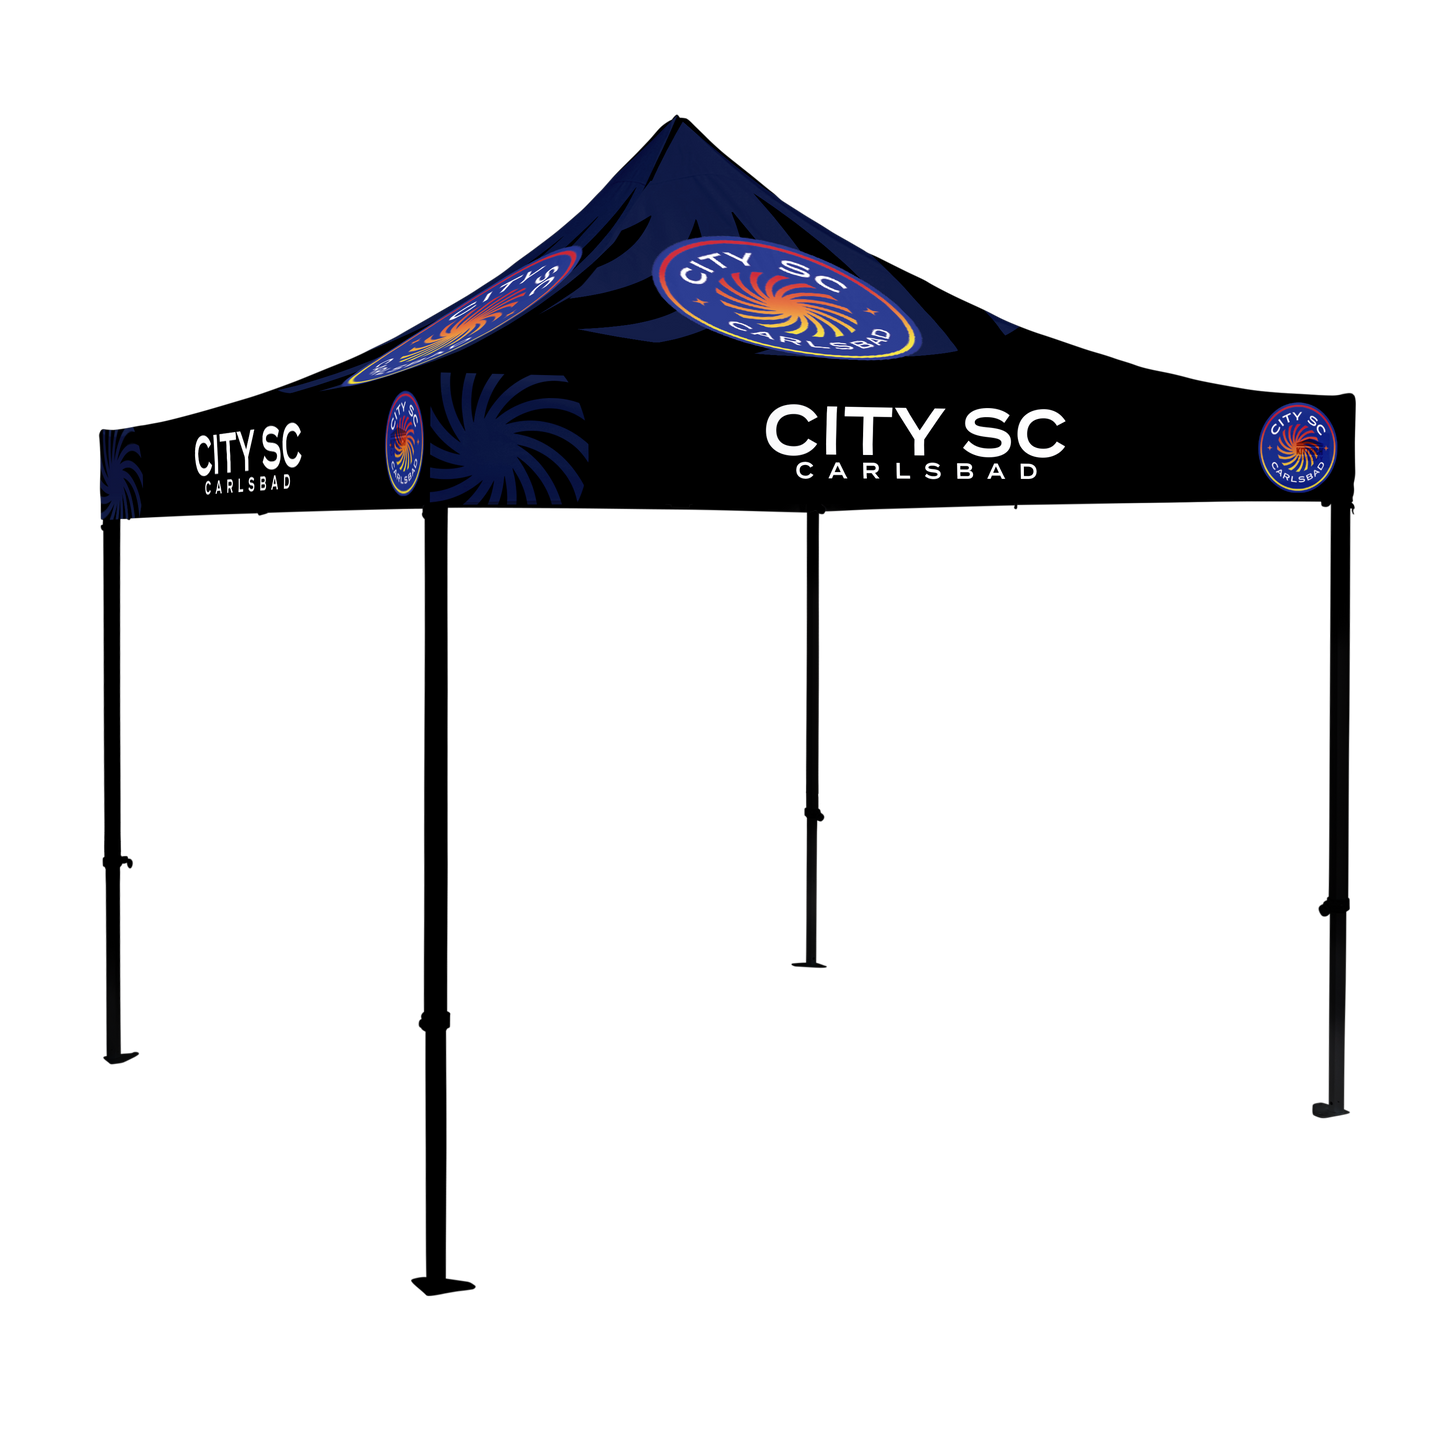 City SC Carlsbad 10x10 Canopy Kit